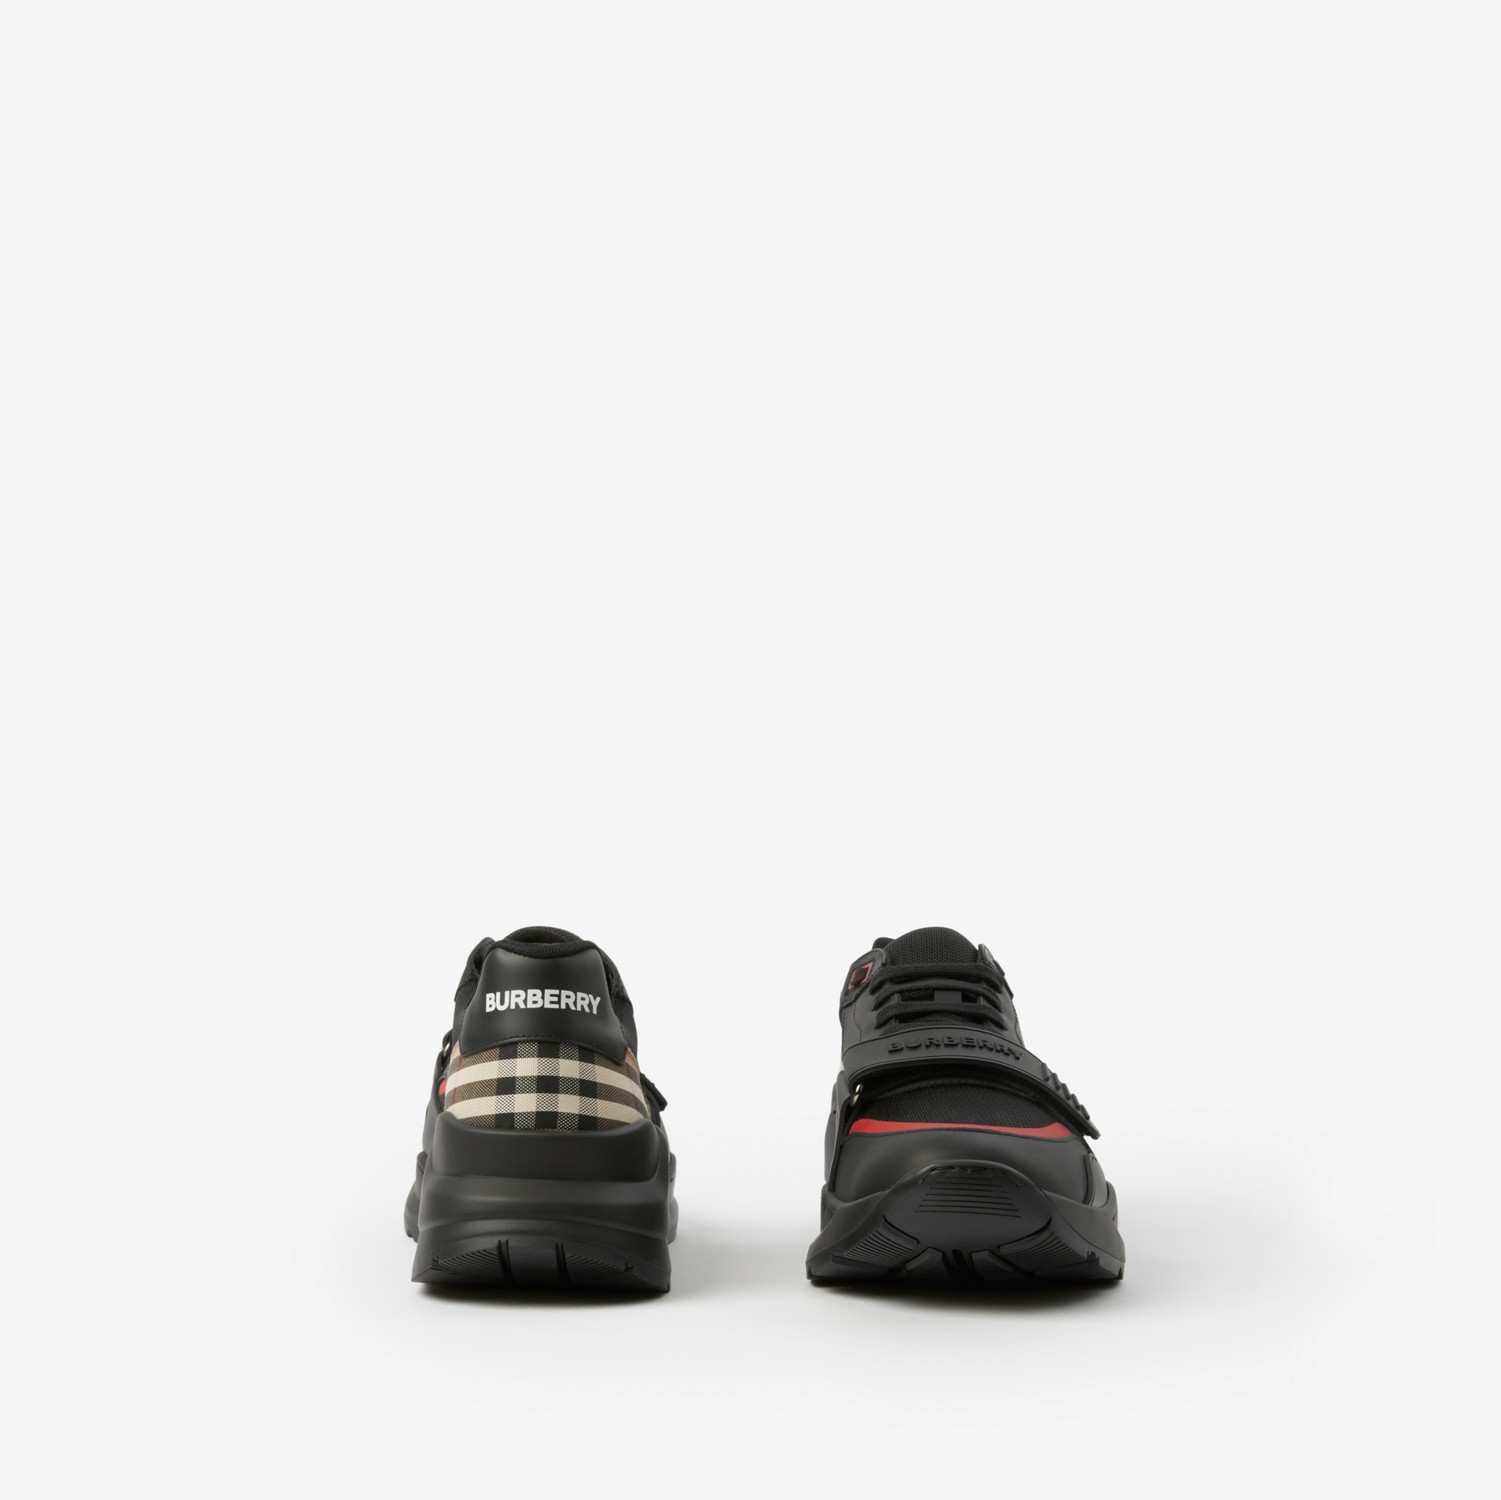 Sneaker in nylon, pelle e motivo Vintage check (Nero) - Uomo | Sito ufficiale Burberry®